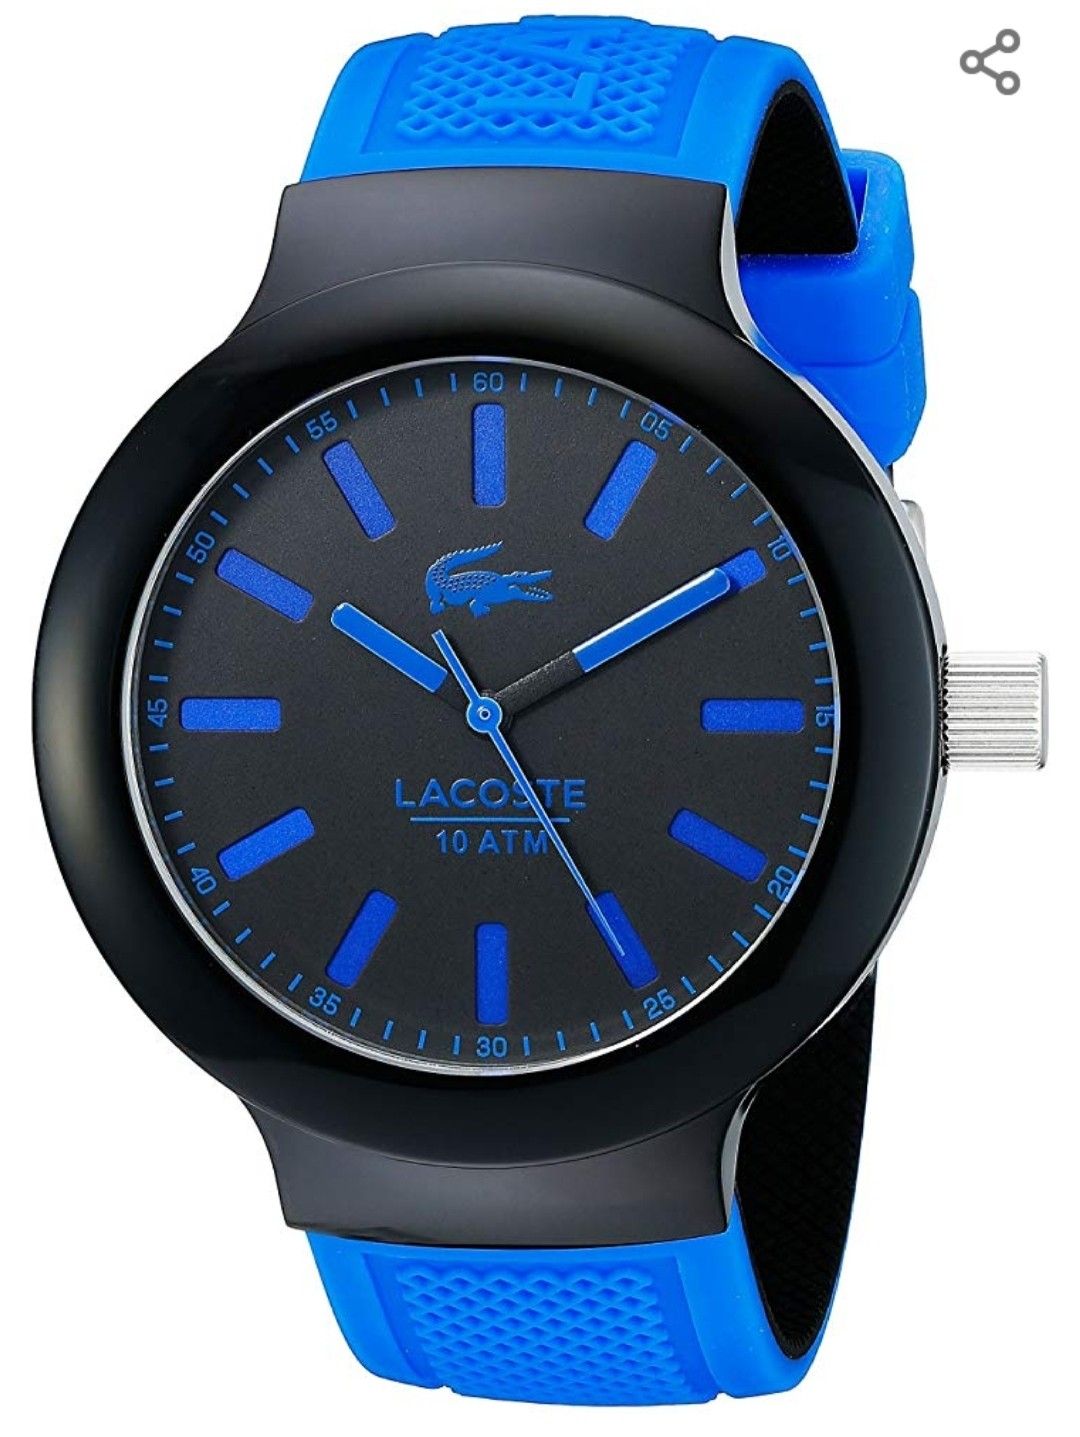 Lacoste Watch Like New!!